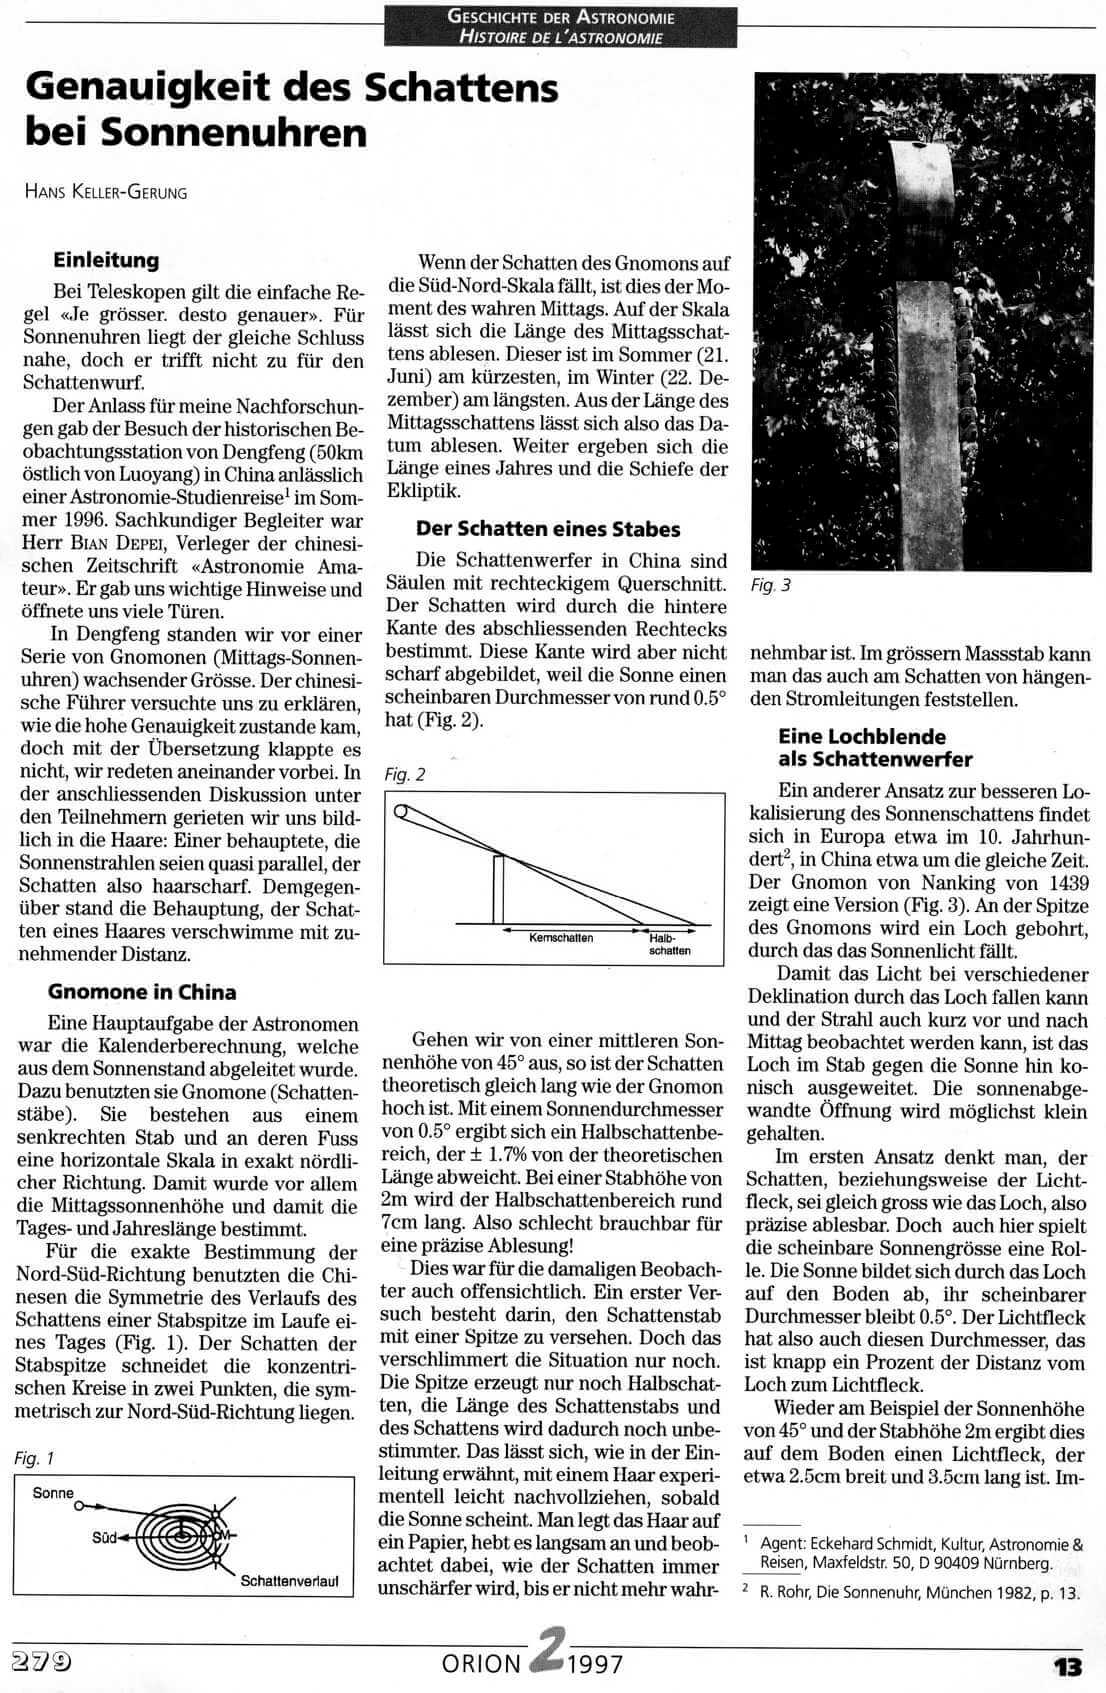 Geschichte der Astronomie Orion 2 1997 Seite 13